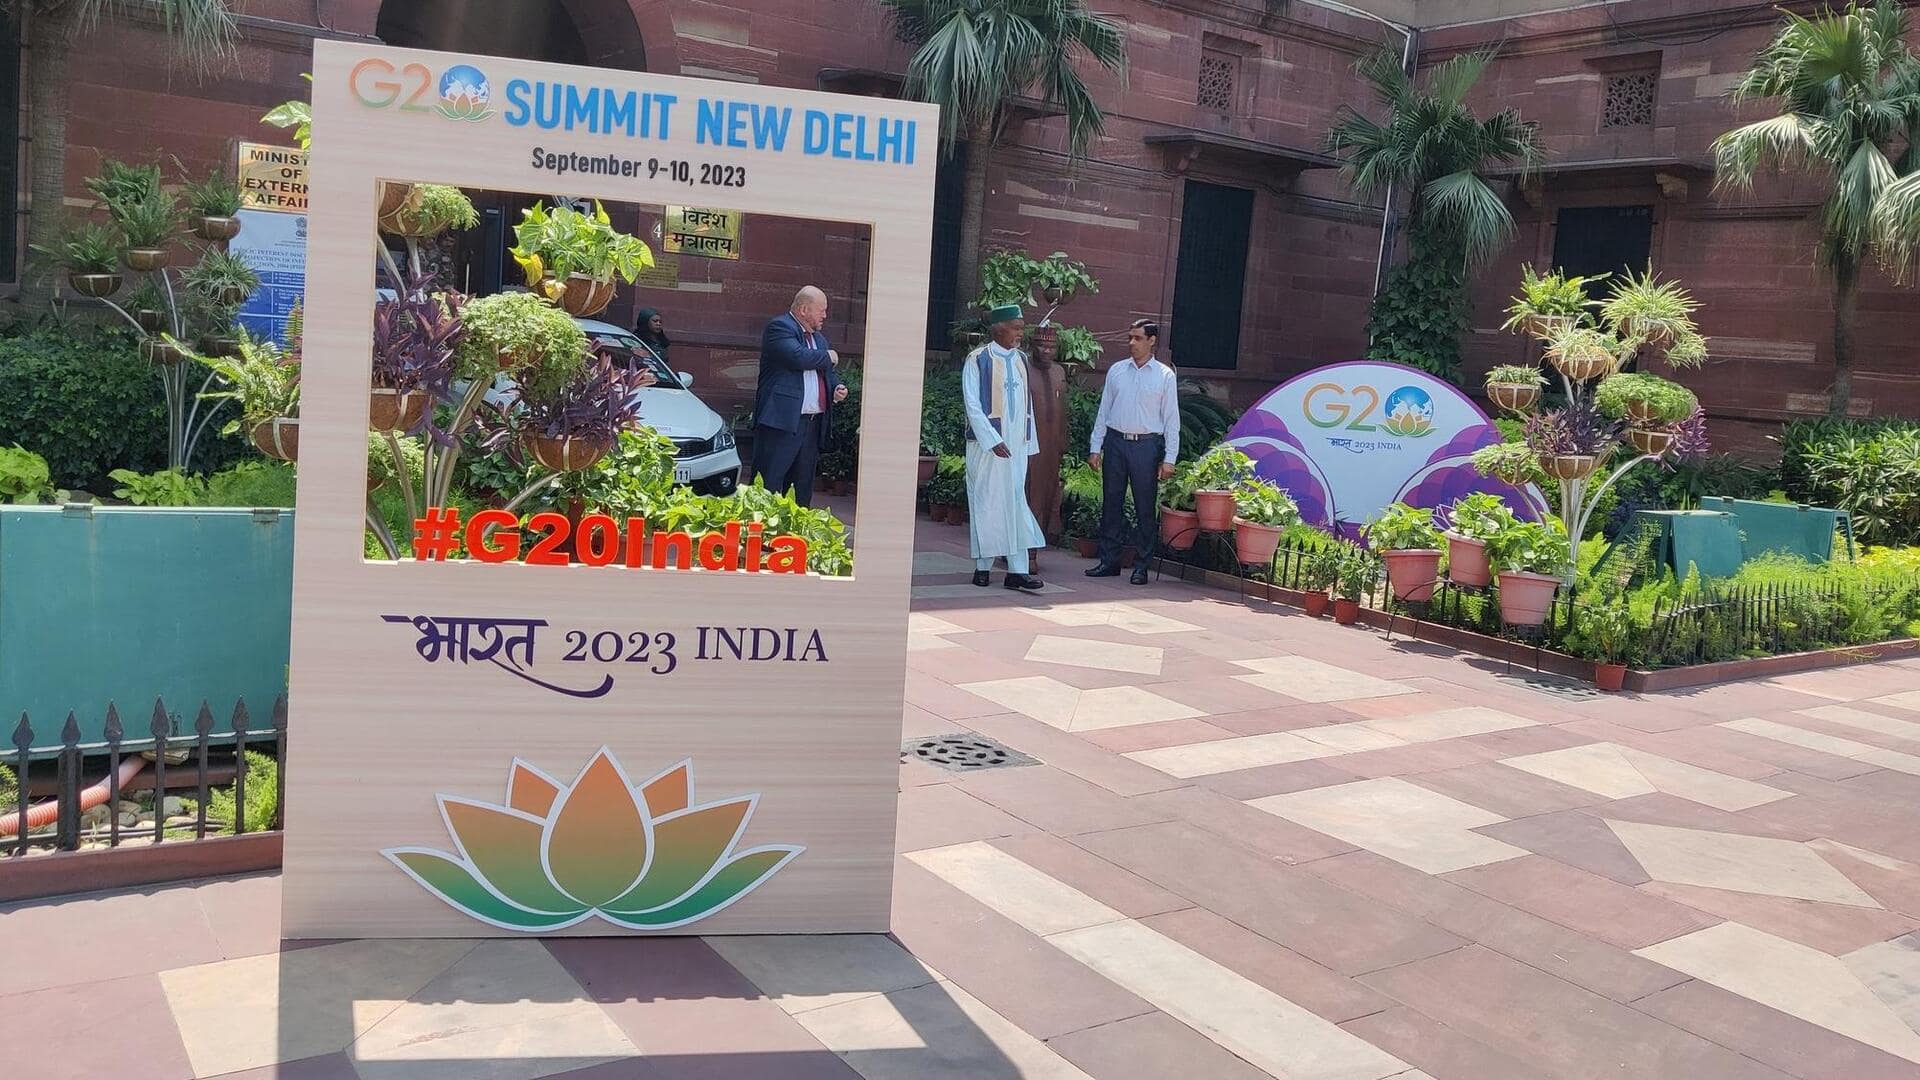 दिल्ली: G-20 शिखर सम्मेलन से पहली ढकी गईं प्रमुख सड़कों पर मौजूद झुग्गी-झोपड़ियां